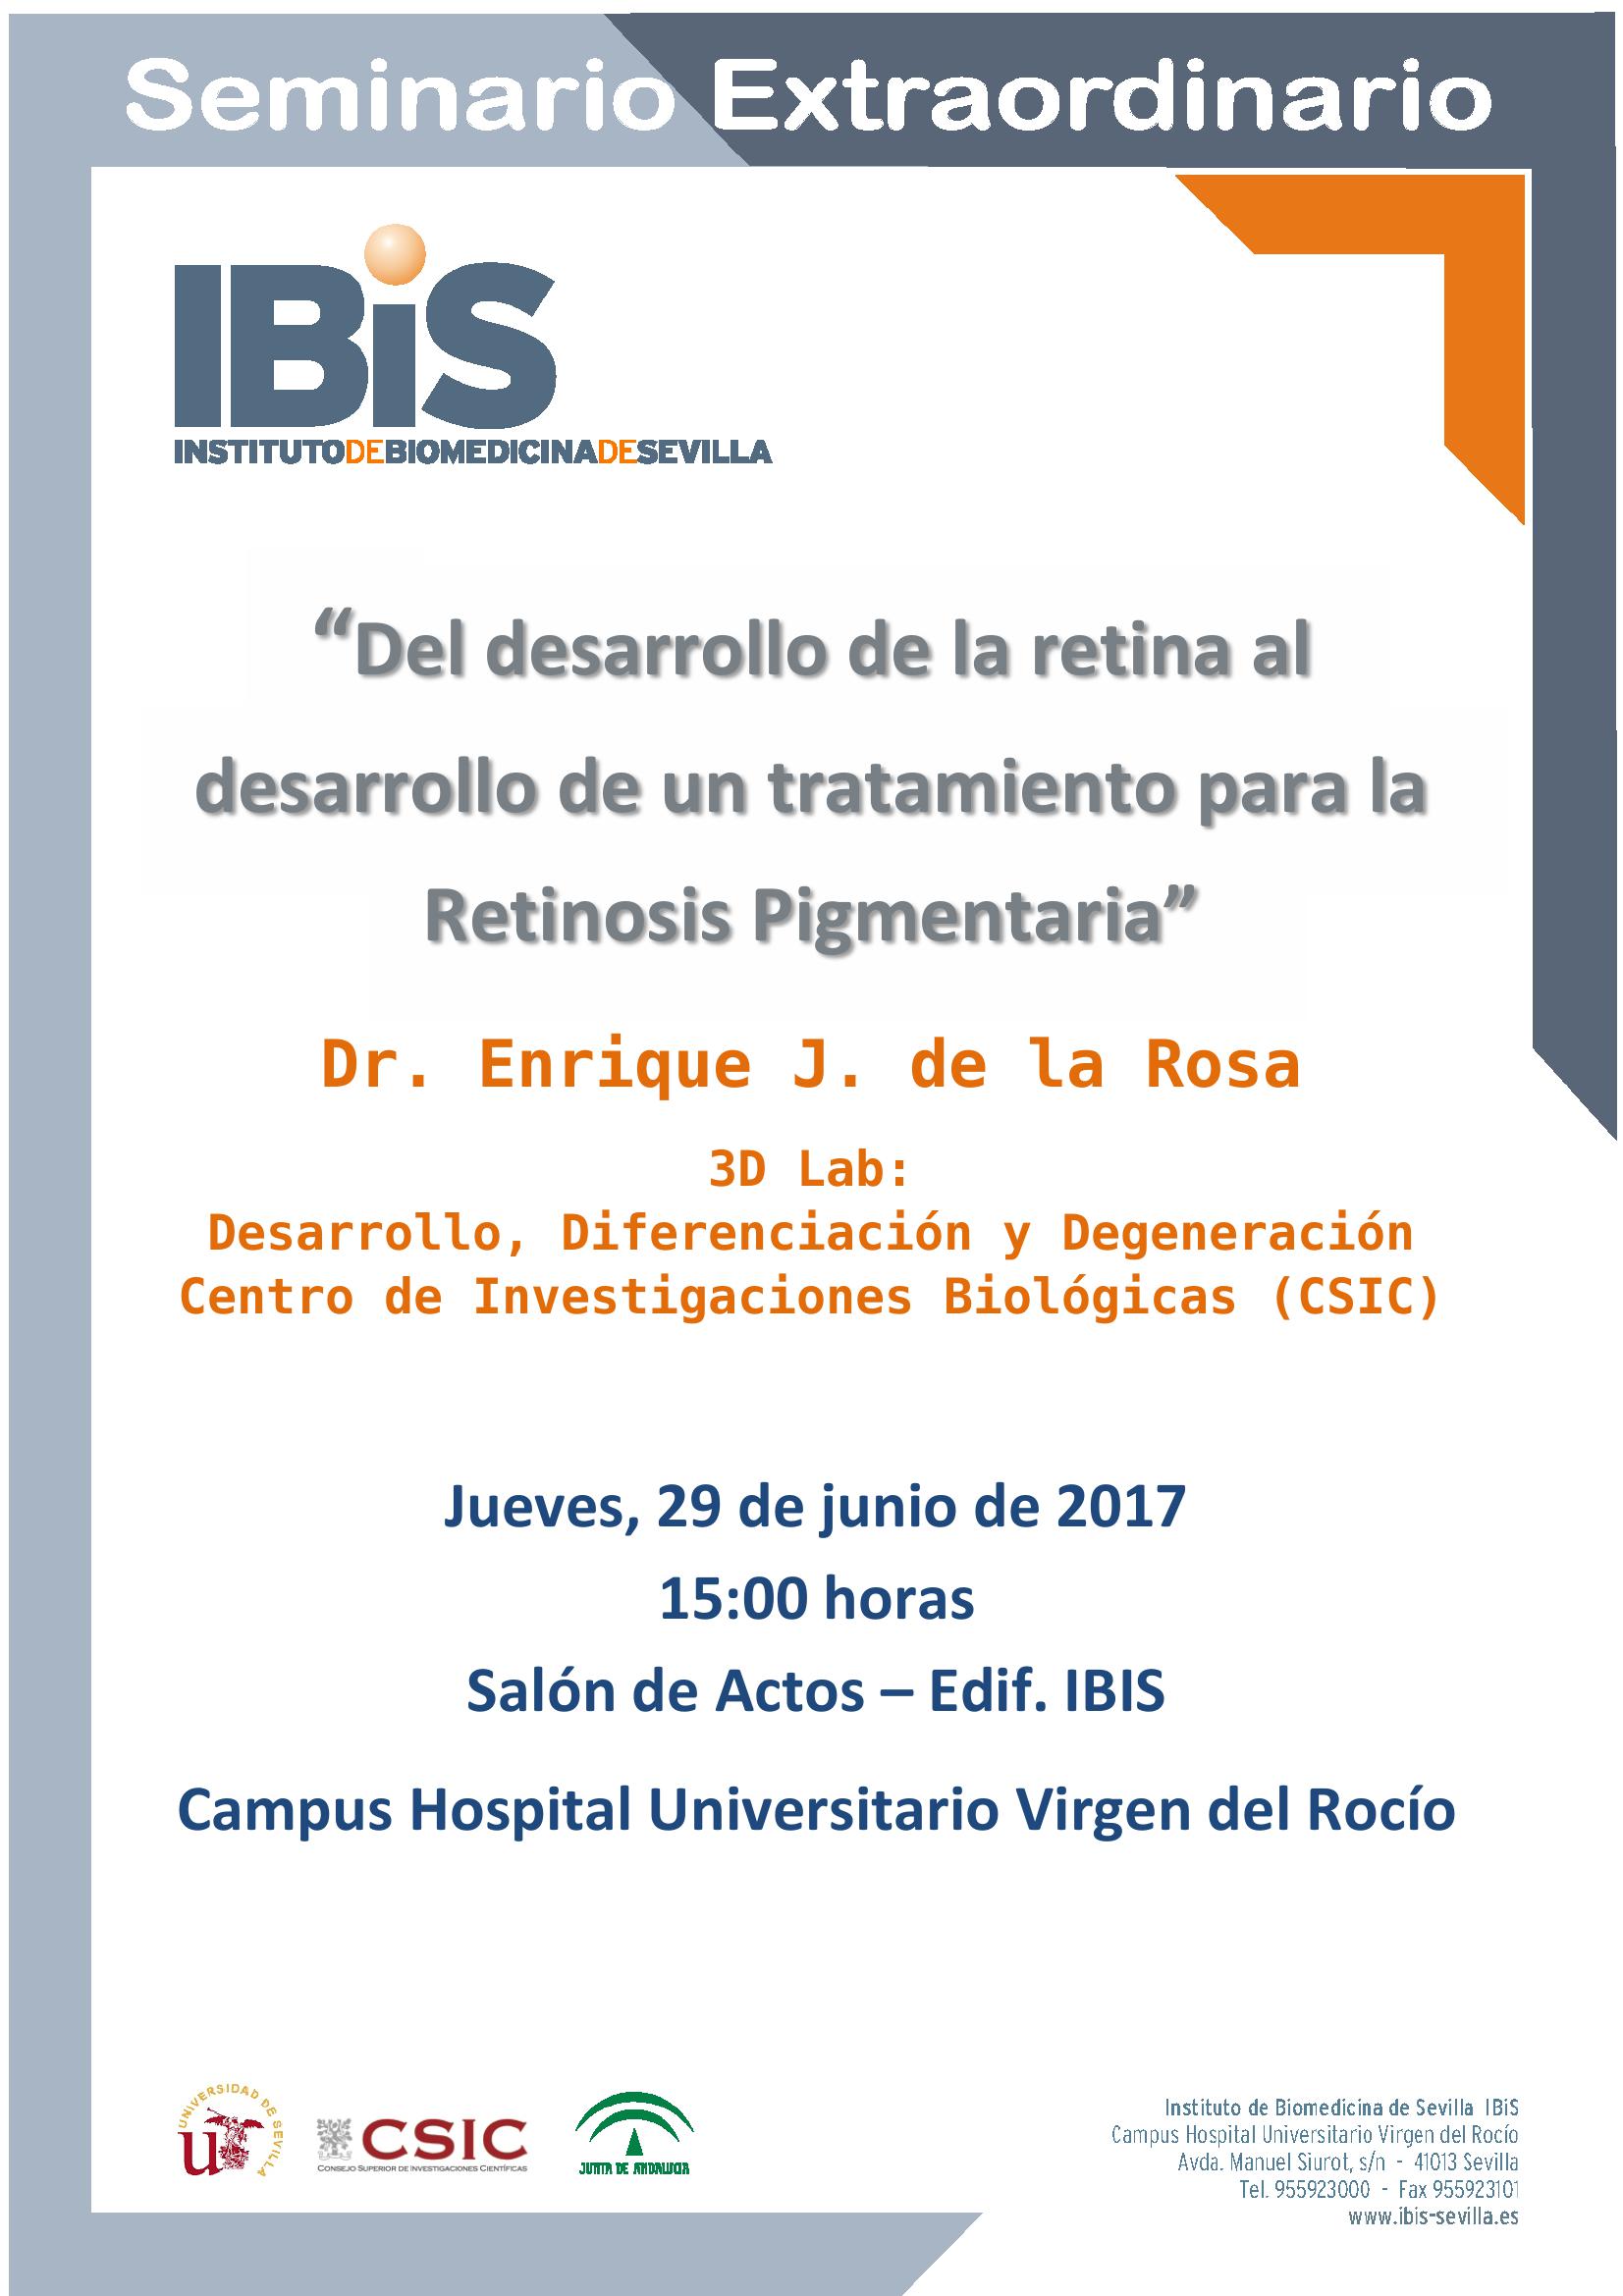 Poster: Del desarrollo de la retina al desarrollo de un tratamiento para la Retinosis Pigmentaria